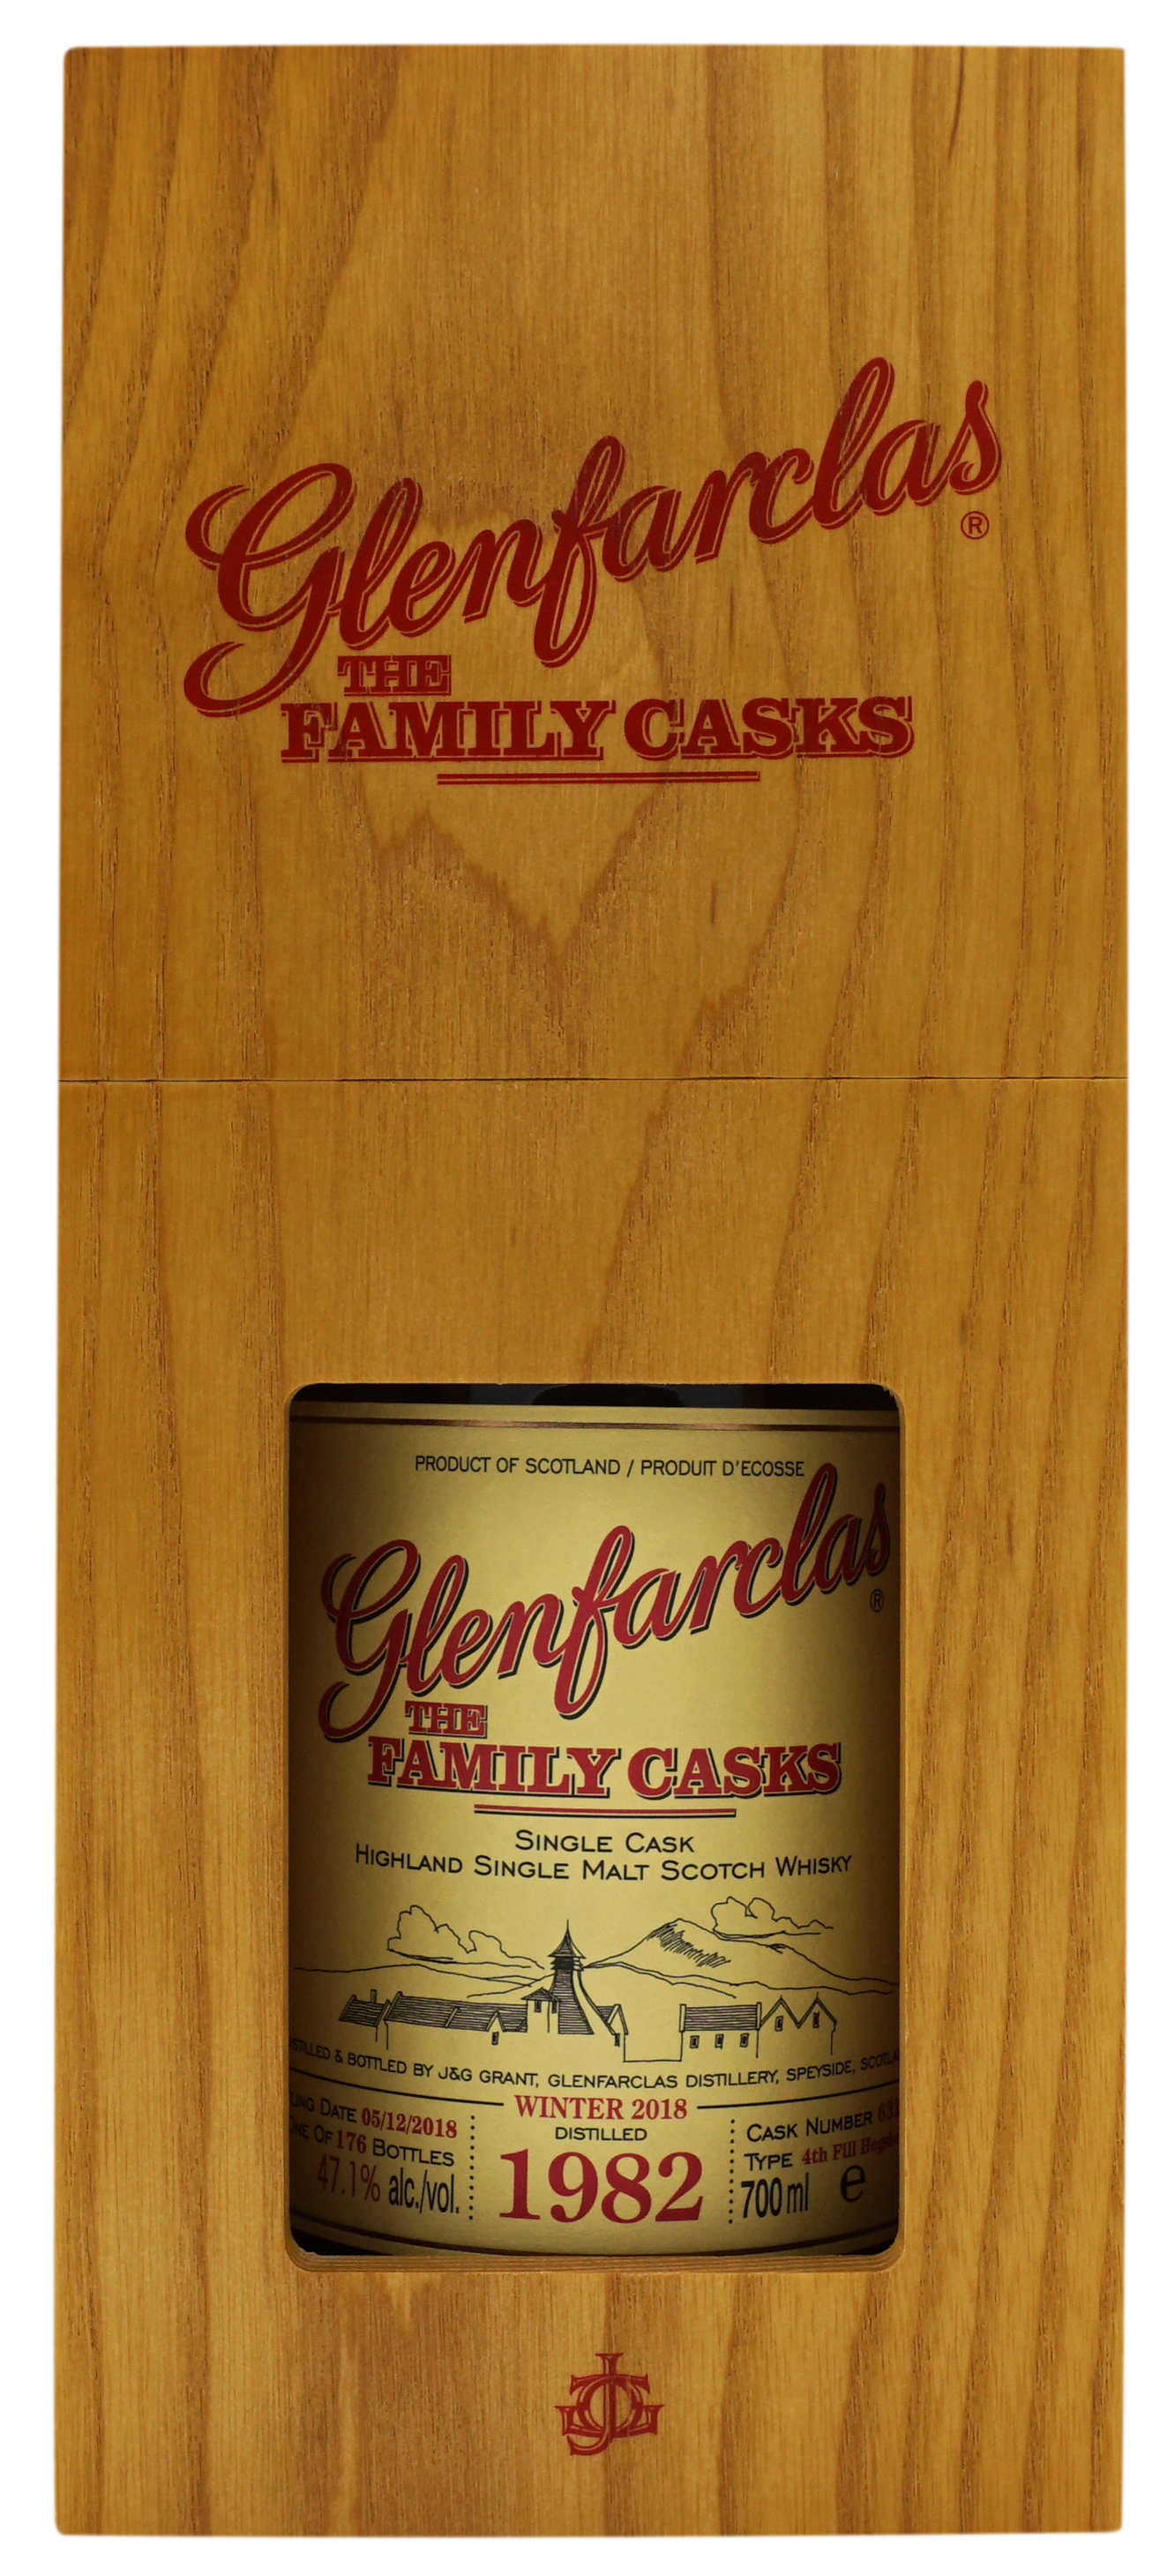 Glenfarclas 1982 Family Cask 632 471 Compleet